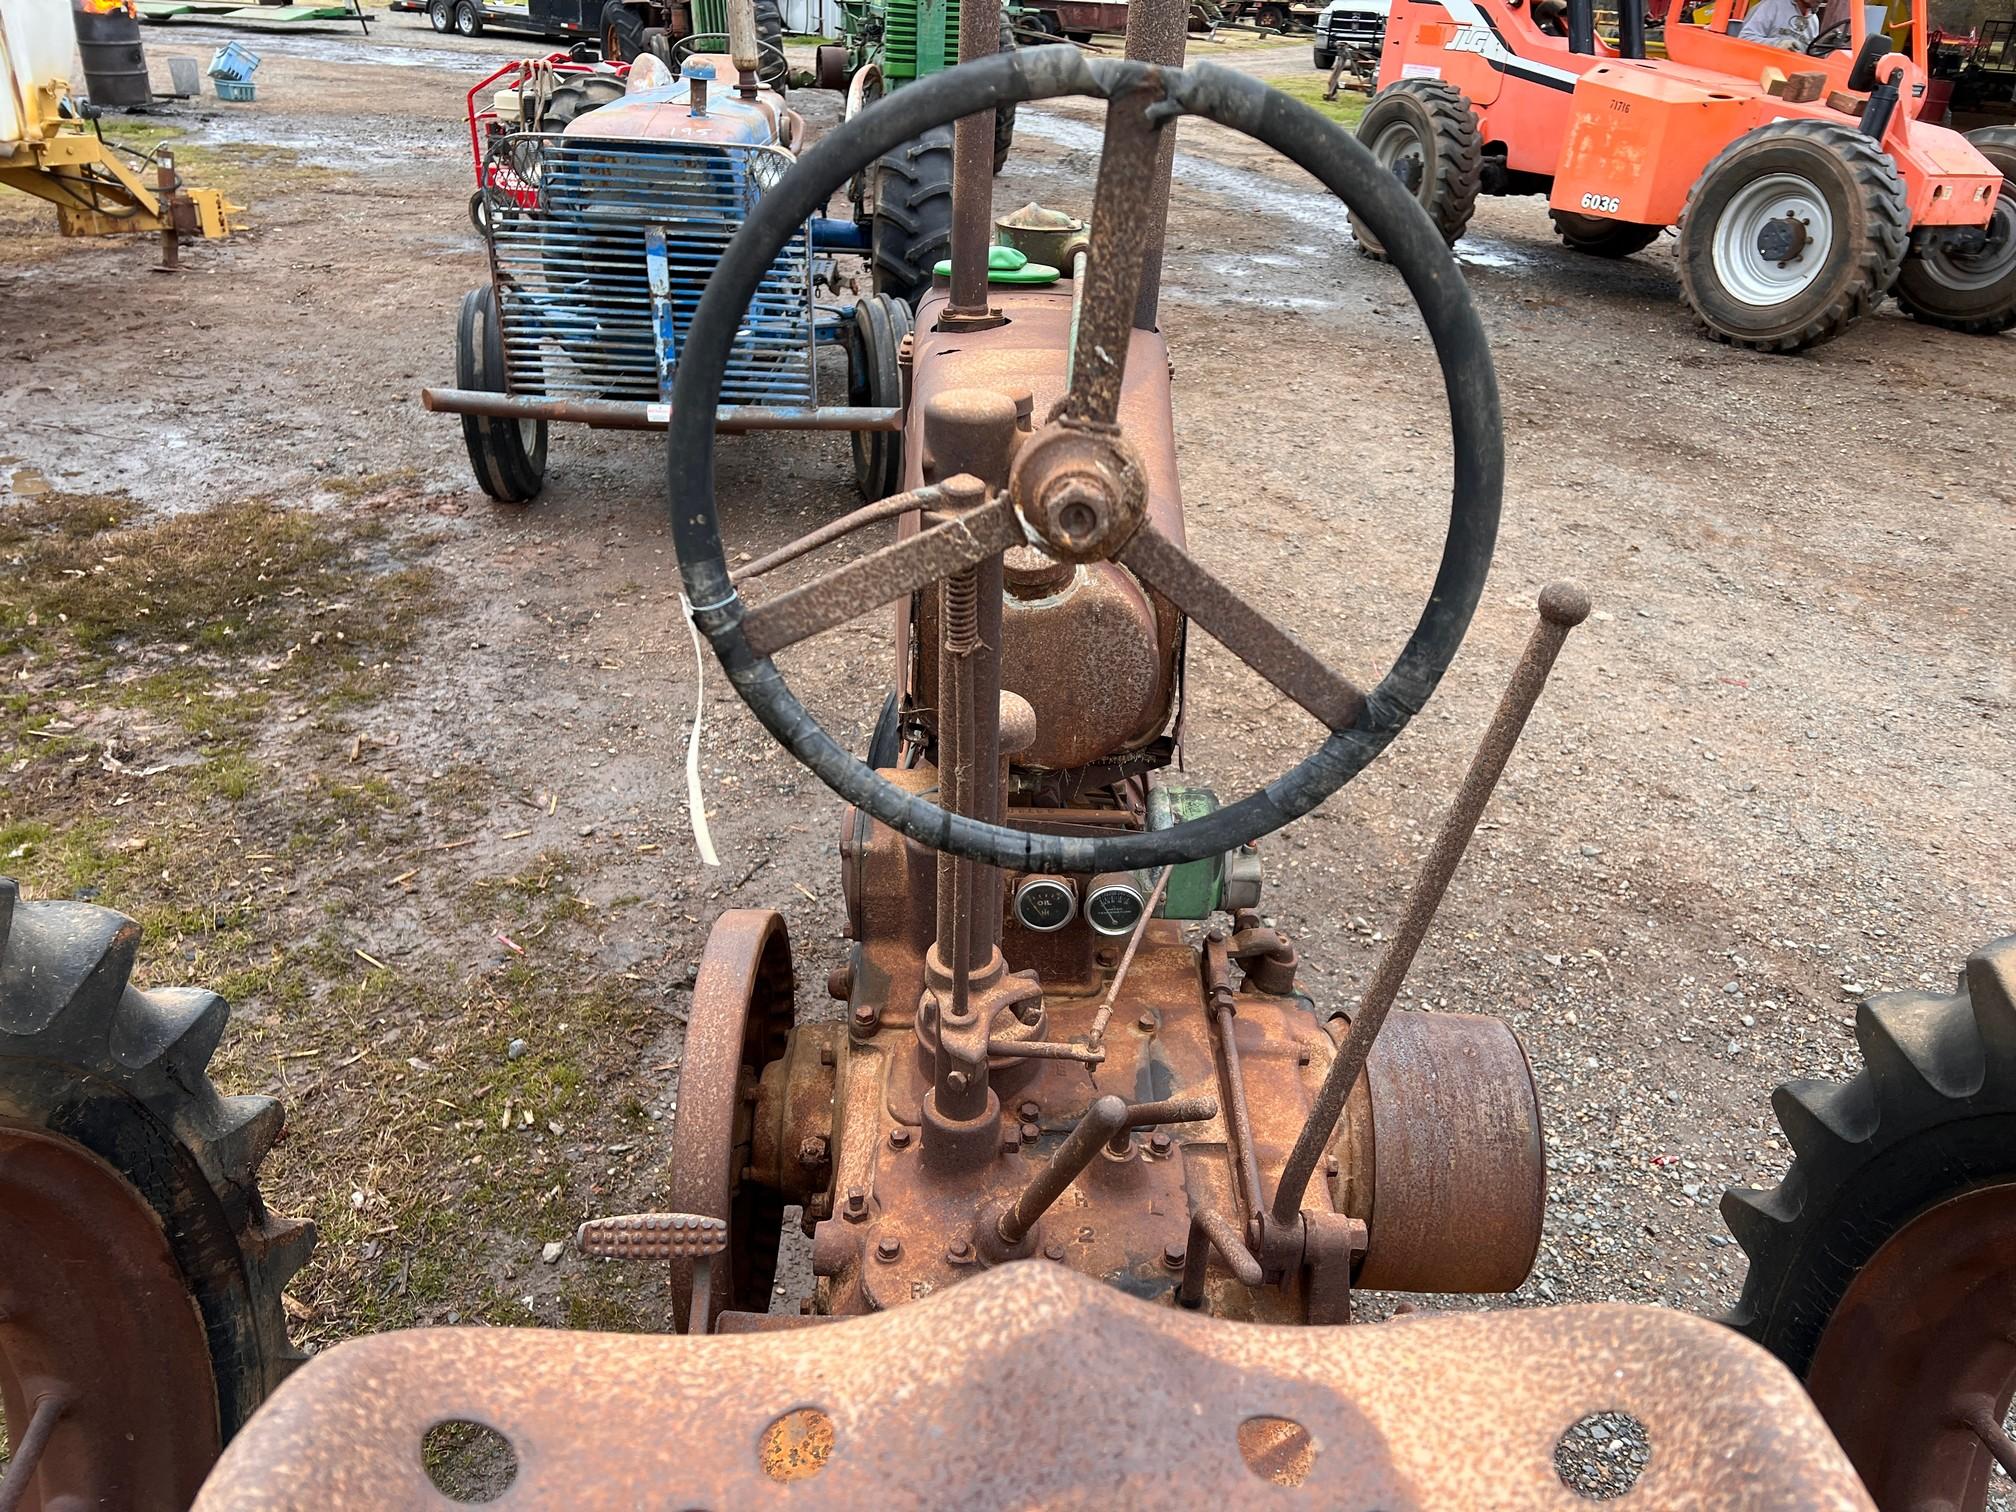 John Deere Model B unstyled 2 cylinder tractor rear spoke wheels